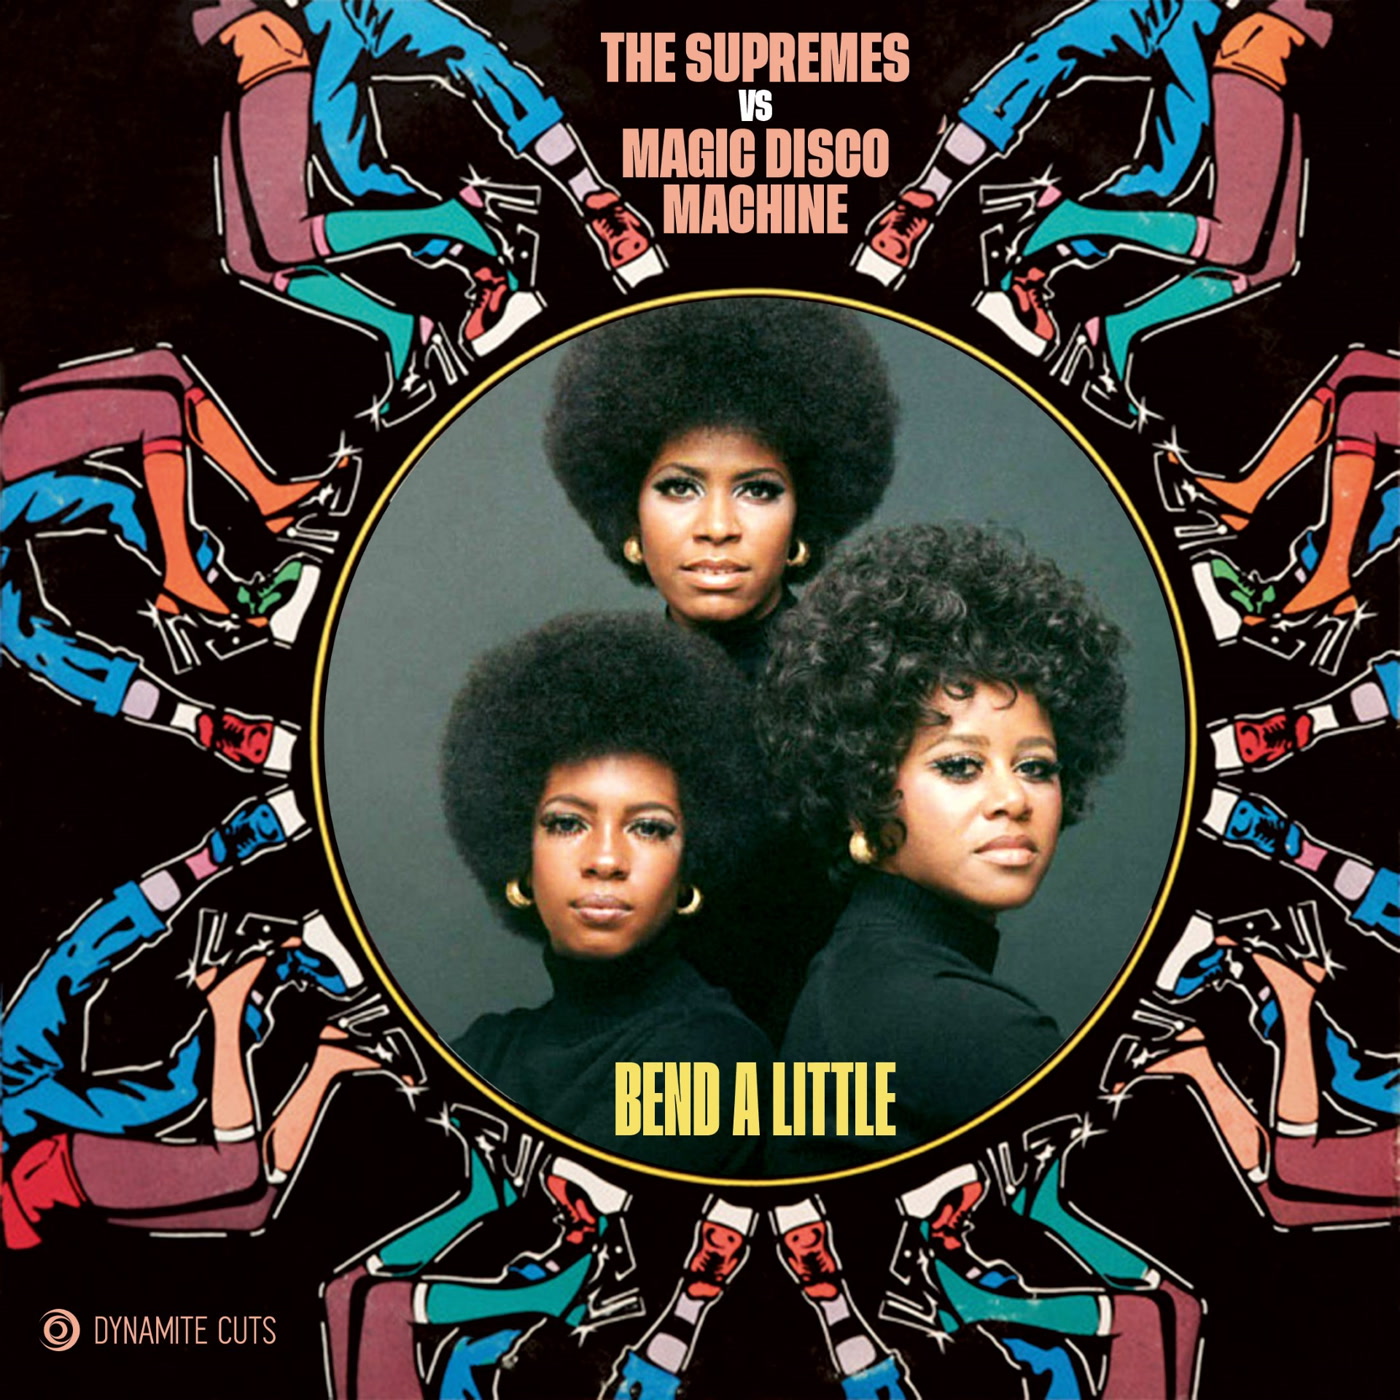 The Supremes & Magic Disco Machine – Bend a little (Dynamite Cuts)